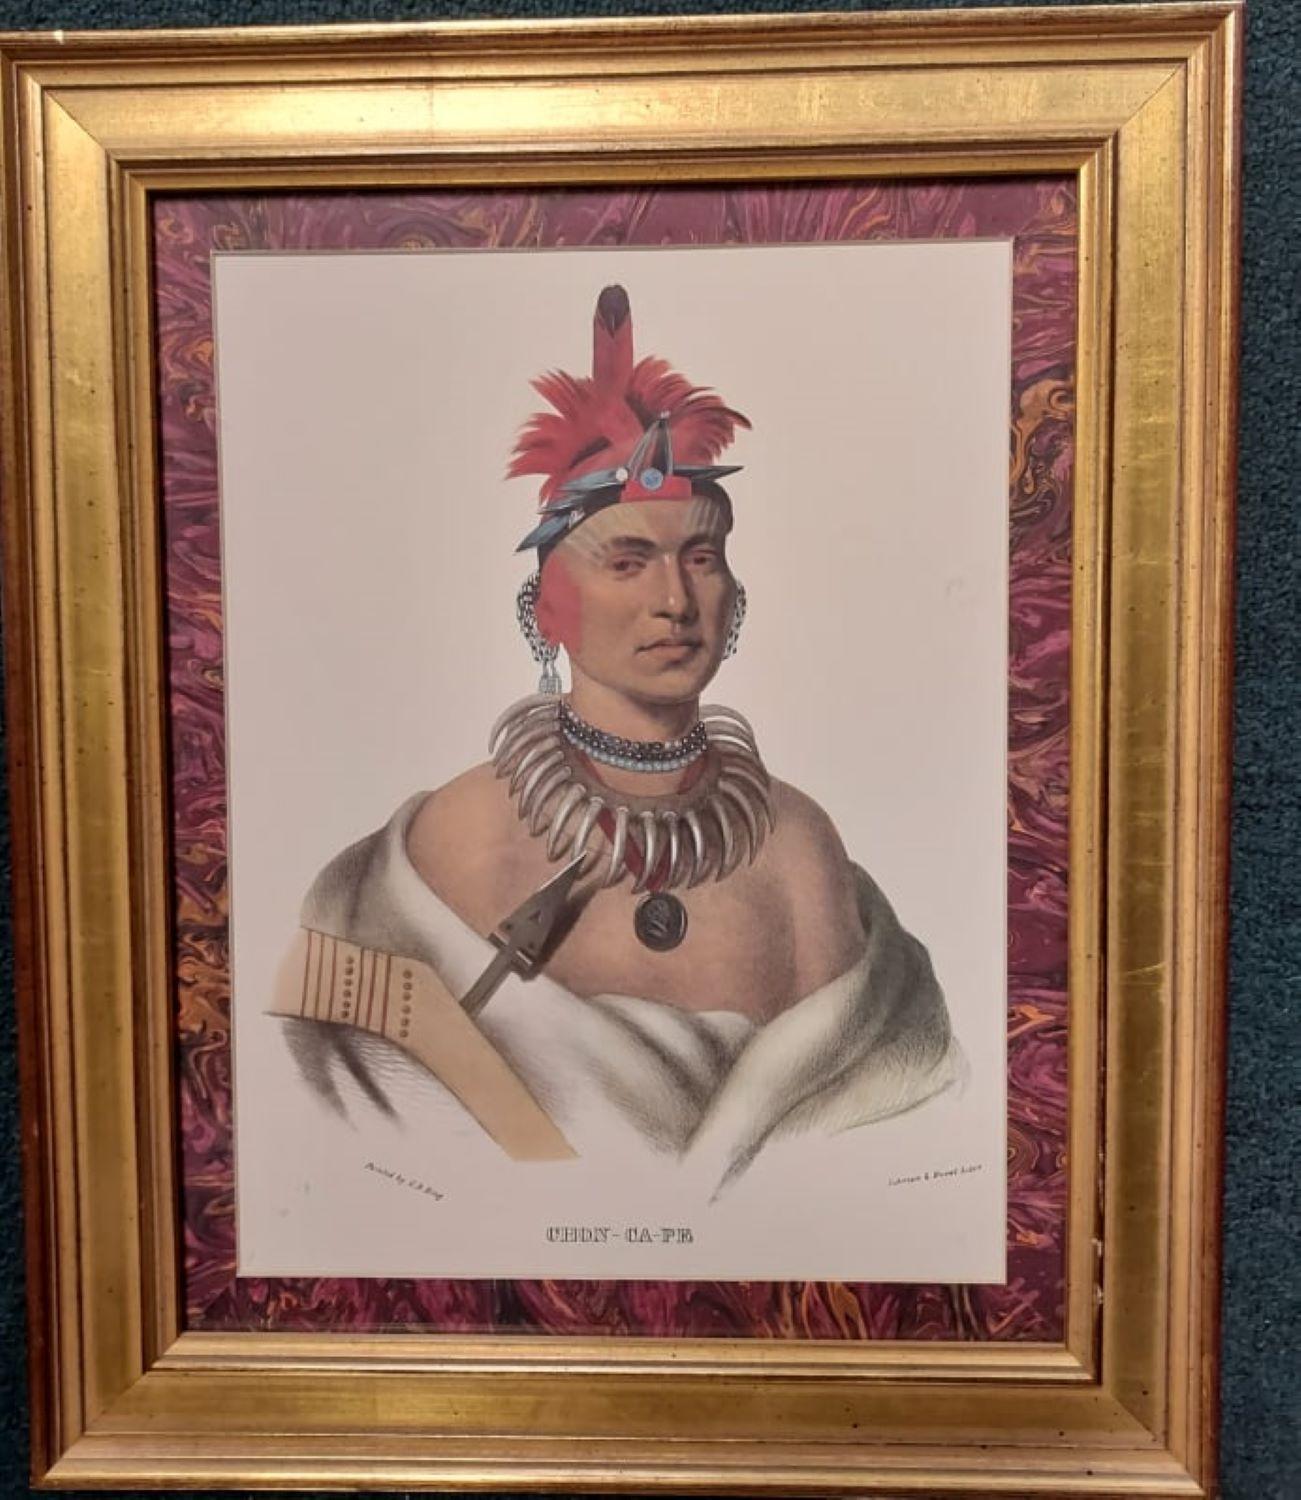 Unknown Figurative Print - Chono Ca Pe, An Ottoe chief, 